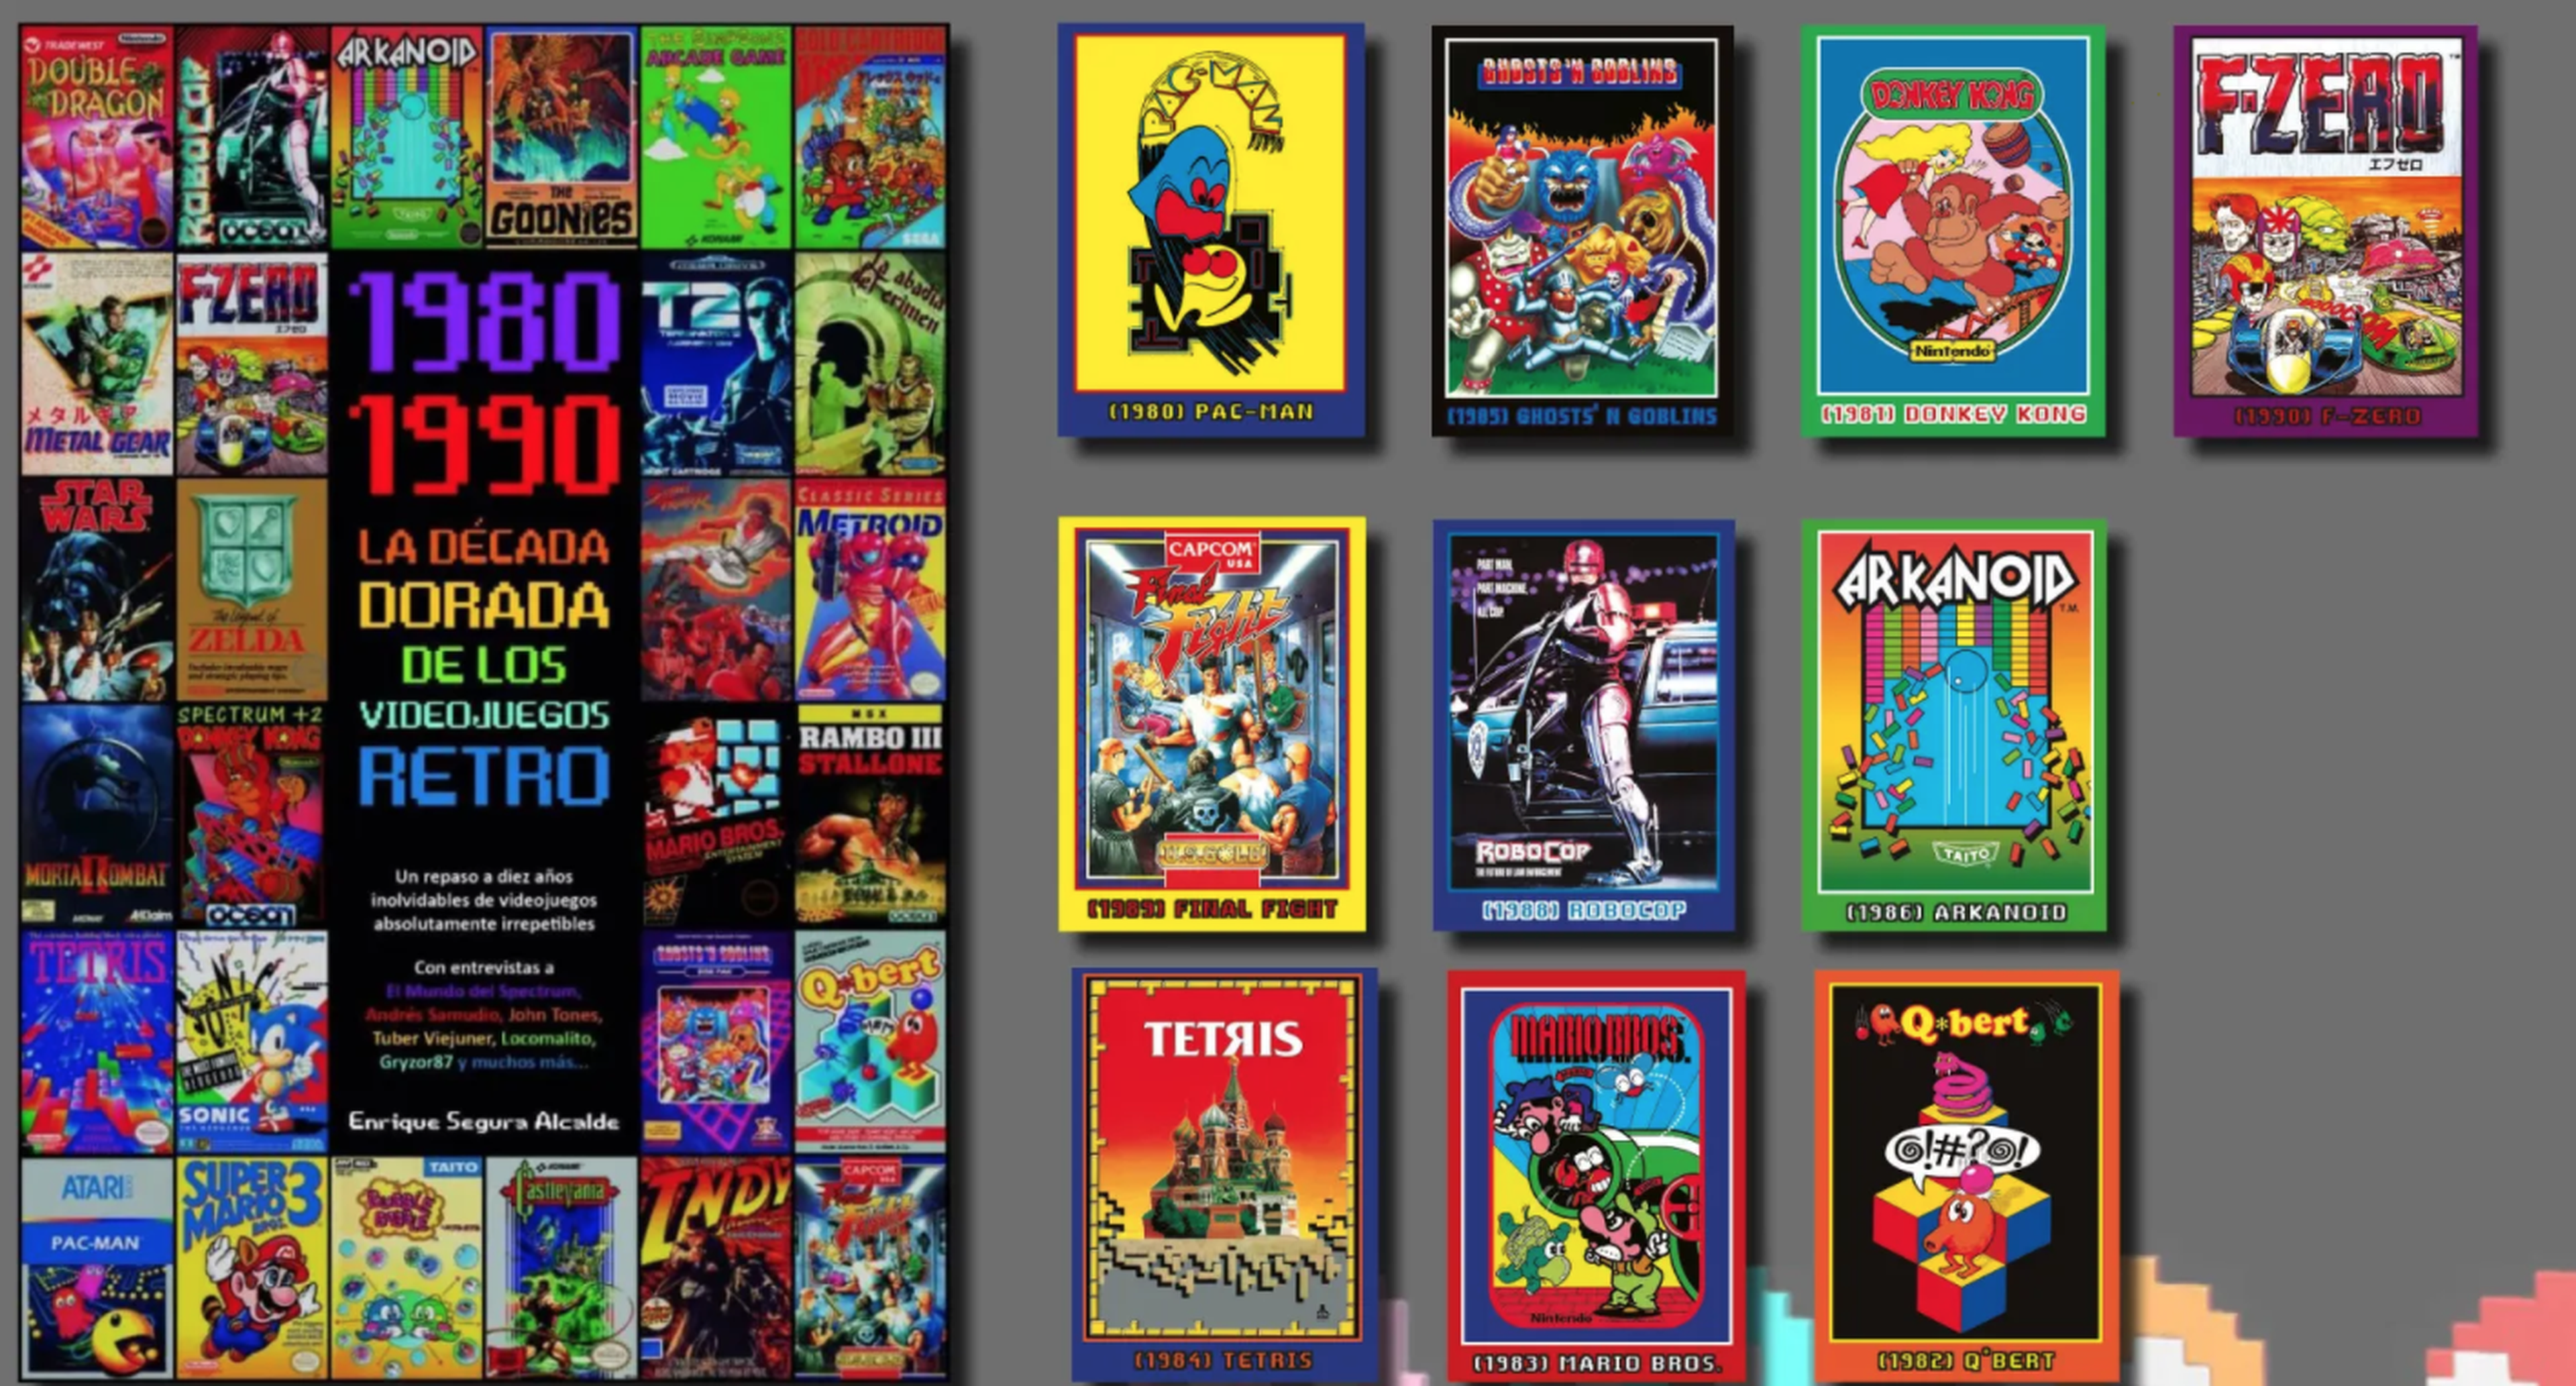 1980-1990 La década dorada de los videojuegos retro, el libro con fines  benéficos